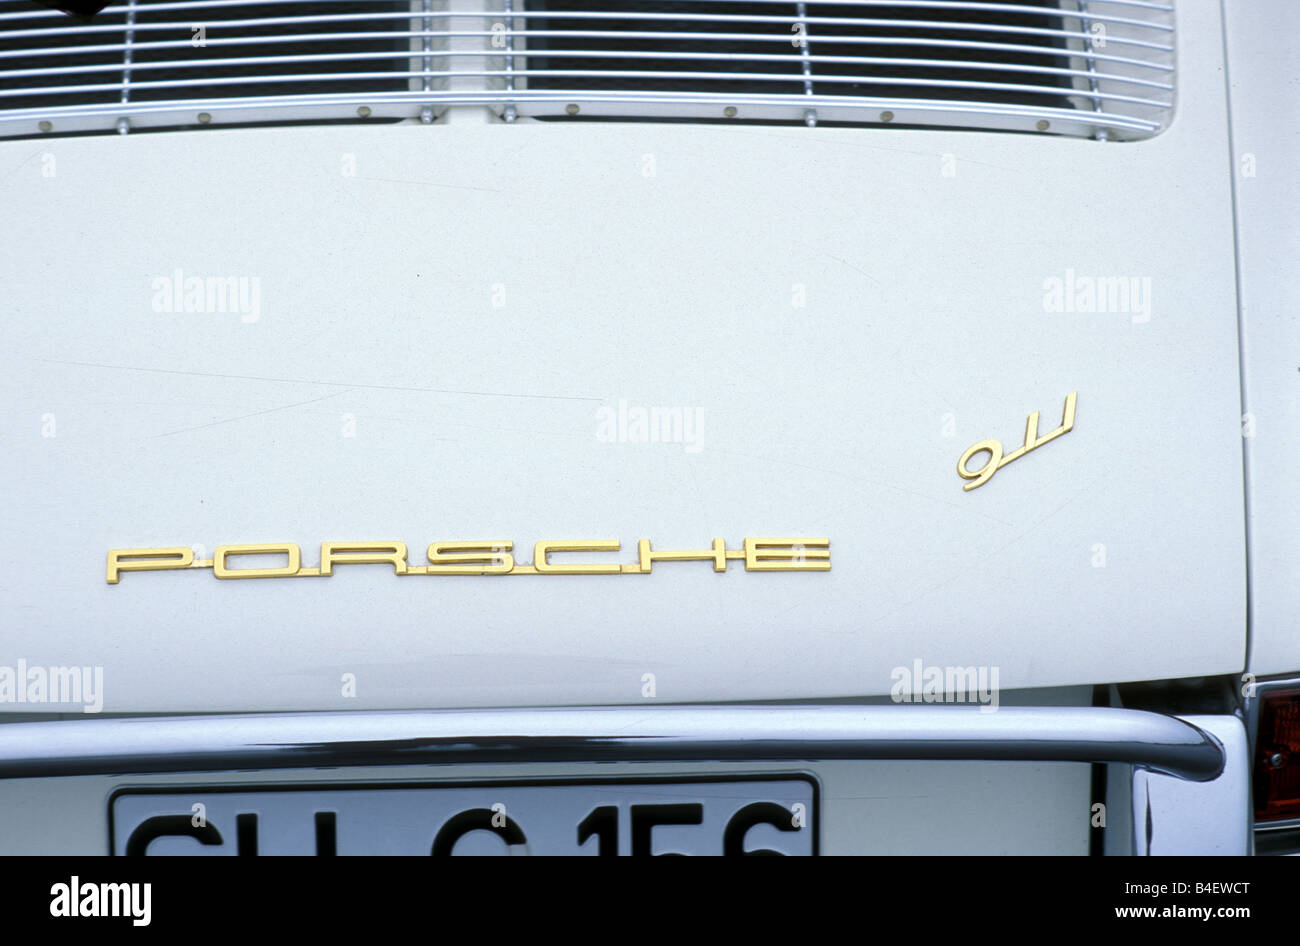 Car, Porsche 911, sports car, Coupé, Coupe, model year 1964, vintage car, 1960s, sixties, white, detail, details, back view, log Stock Photo